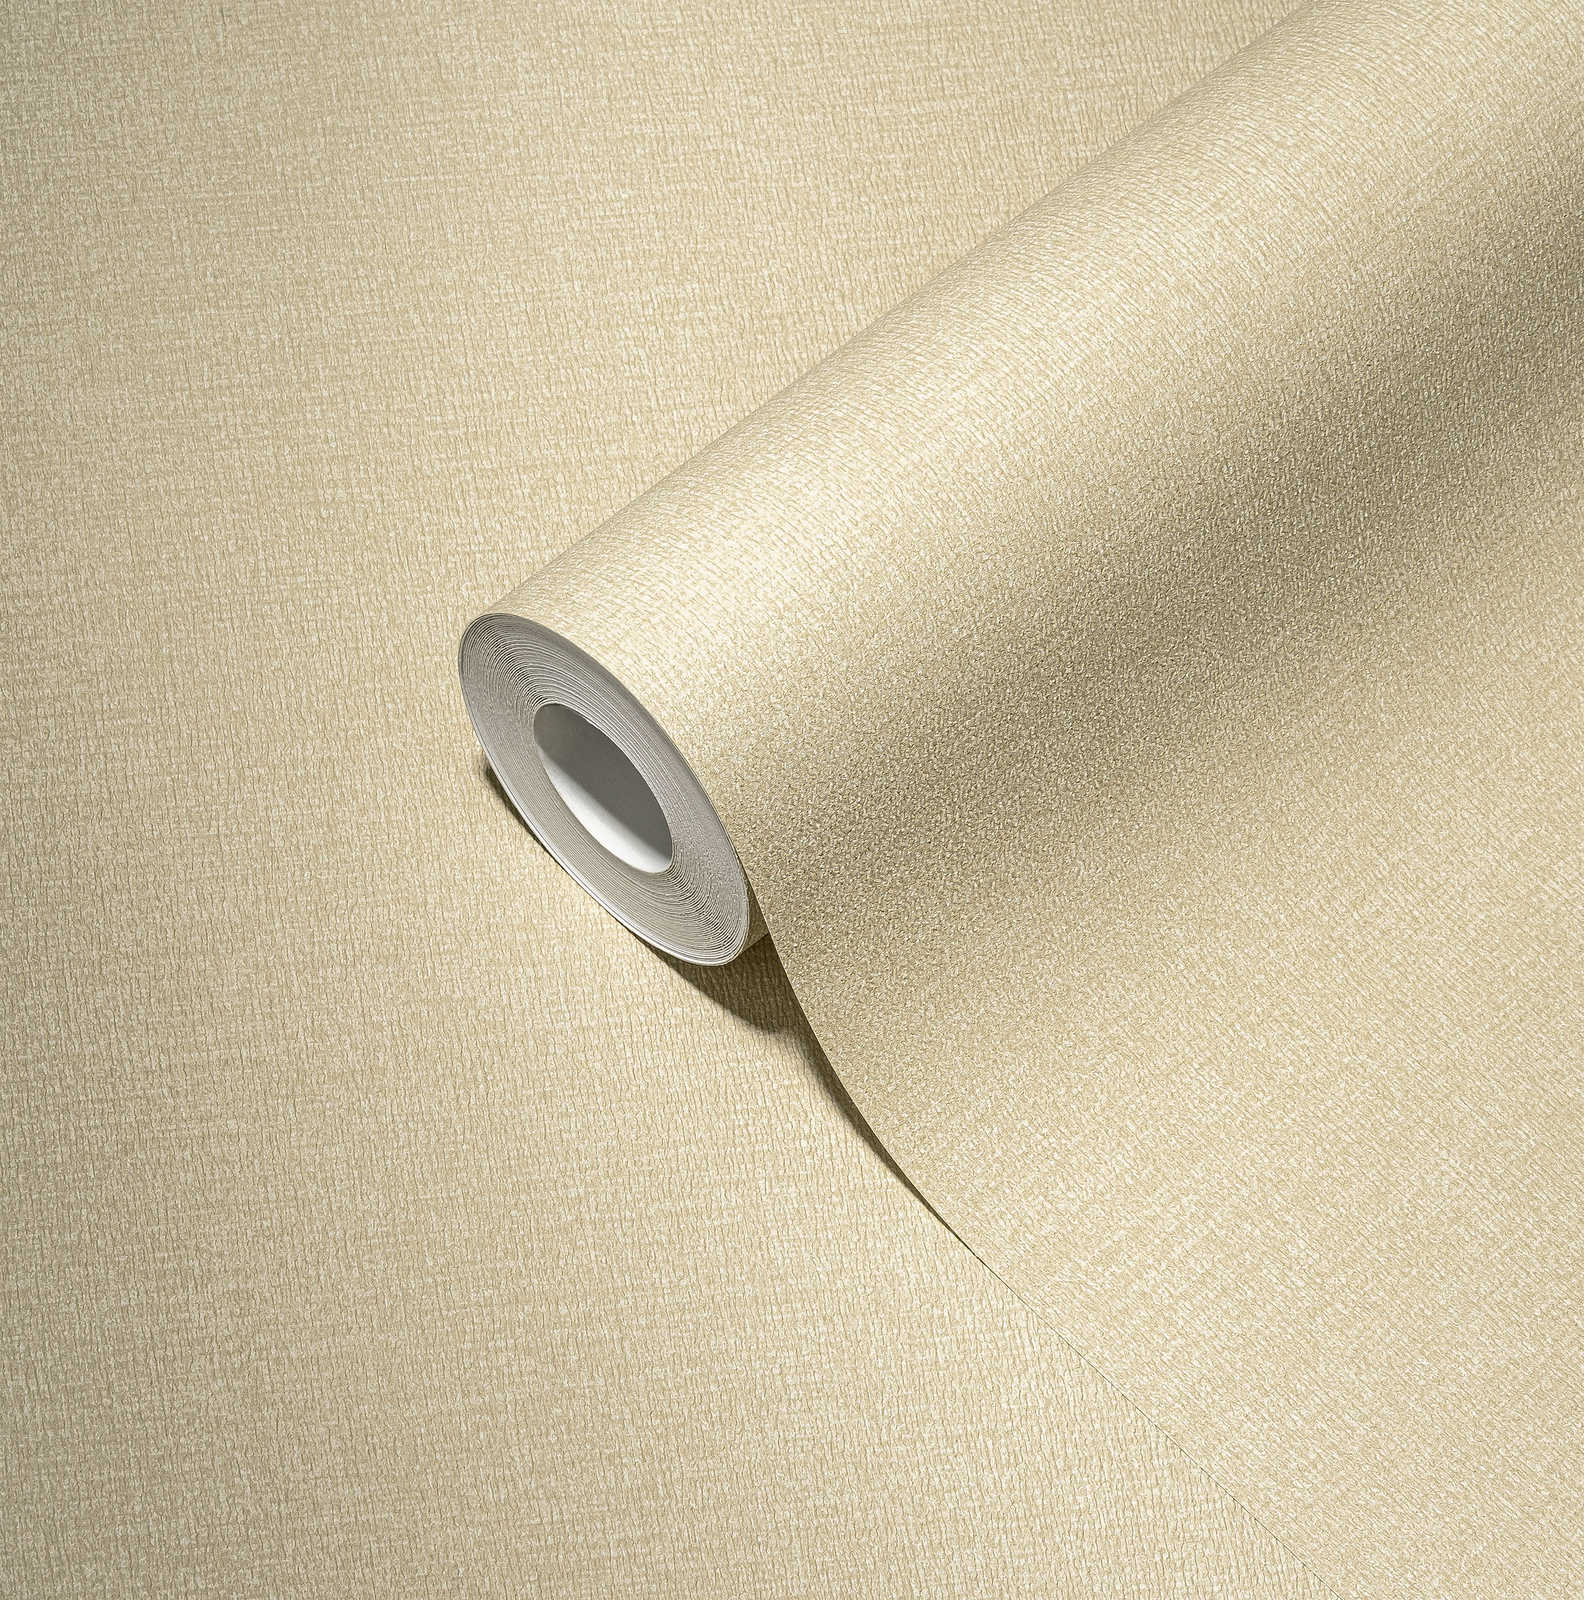             Licht gestructureerd eenheidsbehang in een warme tint - beige
        